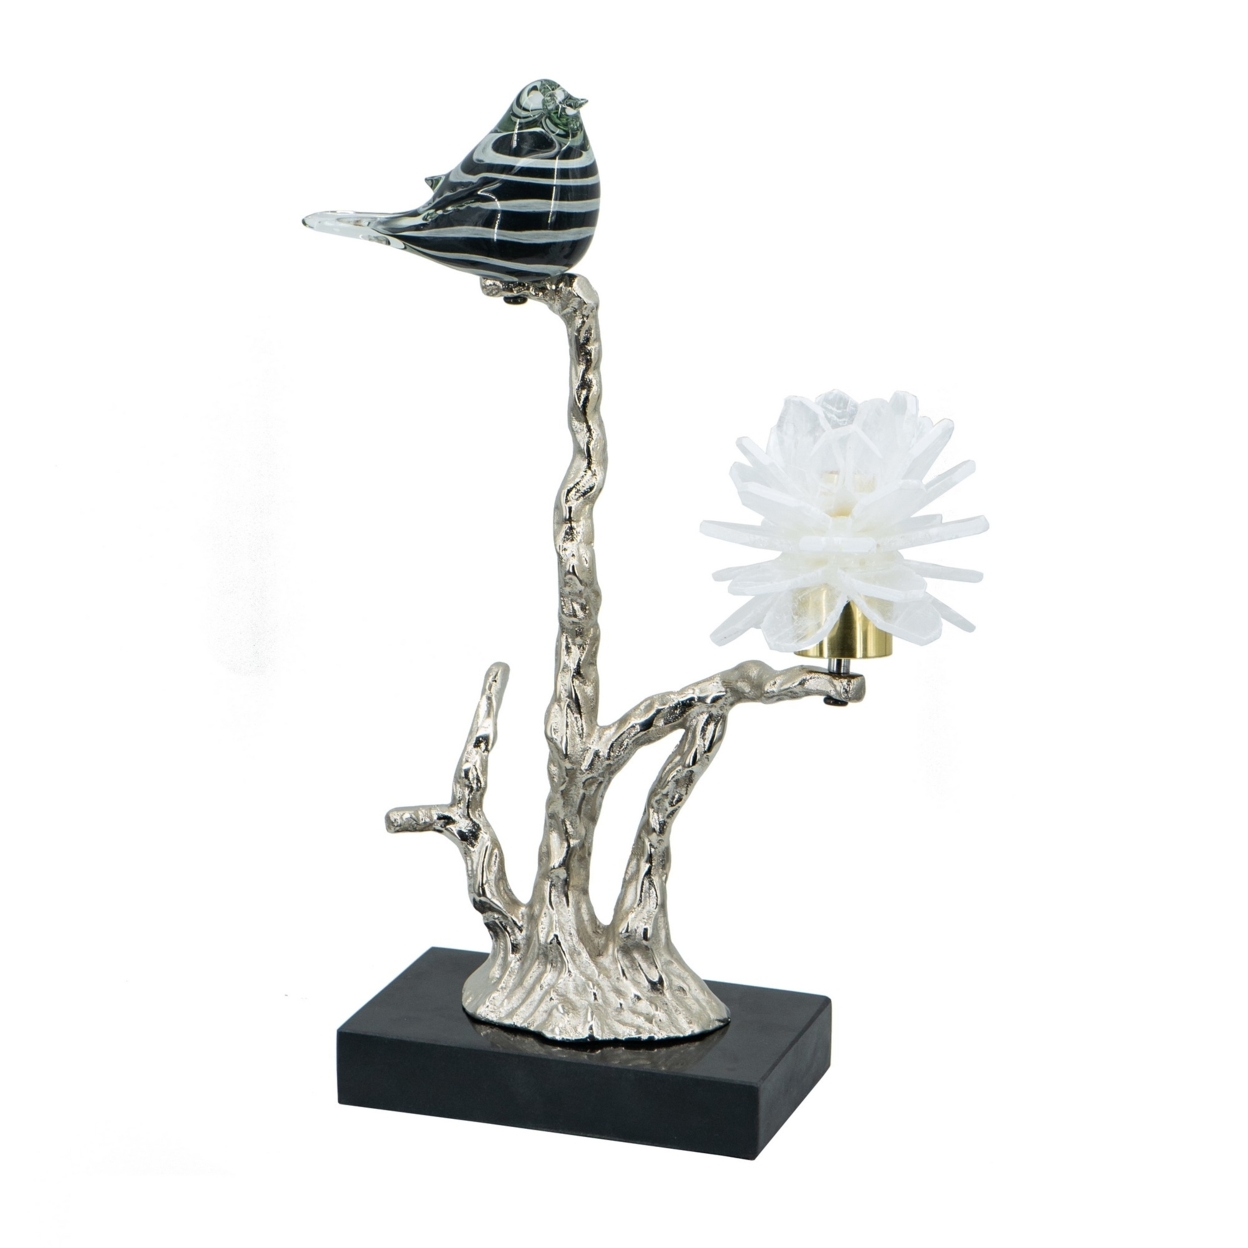 Sue 15 Inch Accent Decor Figurine, Bird On A Branch, Flower, Black, Silver- Saltoro Sherpi